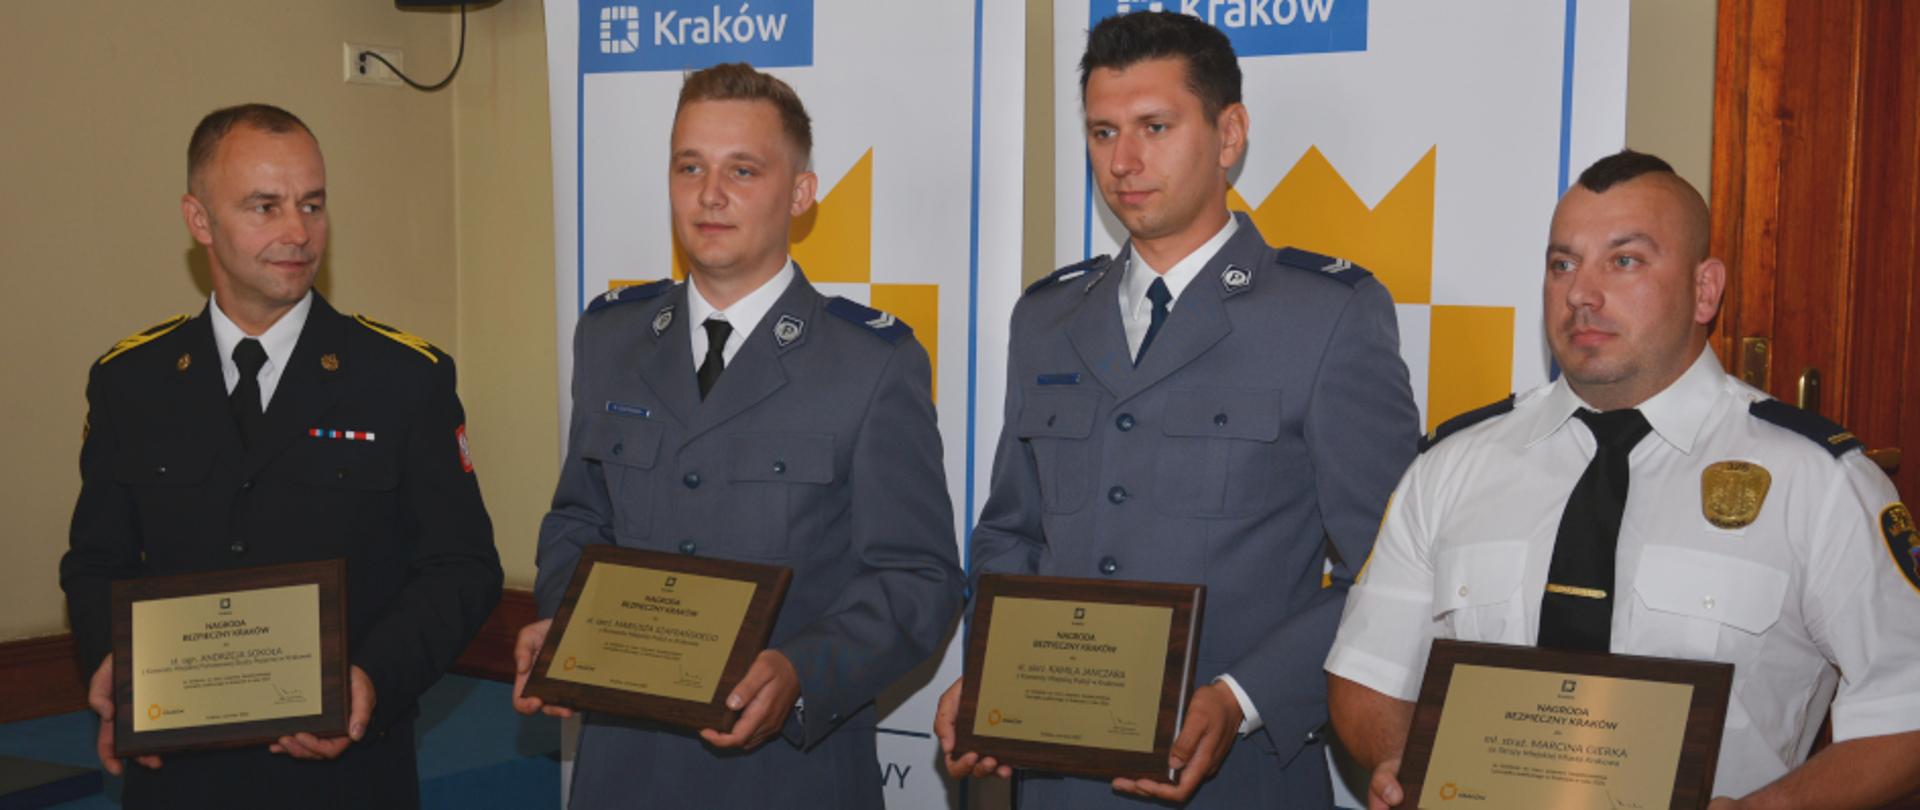 Wręczenie nagrody Bezpieczny Kraków